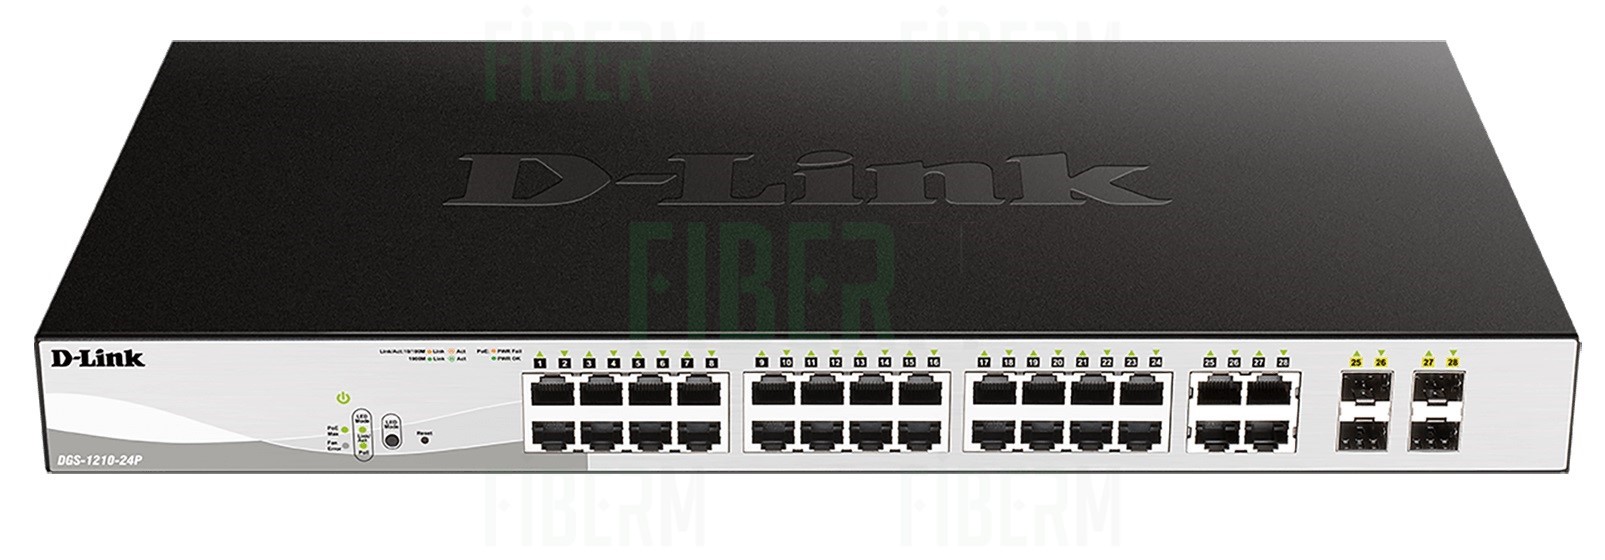 D-LINK DGS-1210-24P - Smart Switch 24 x 10/100/1000 PoE + 4 x SFP